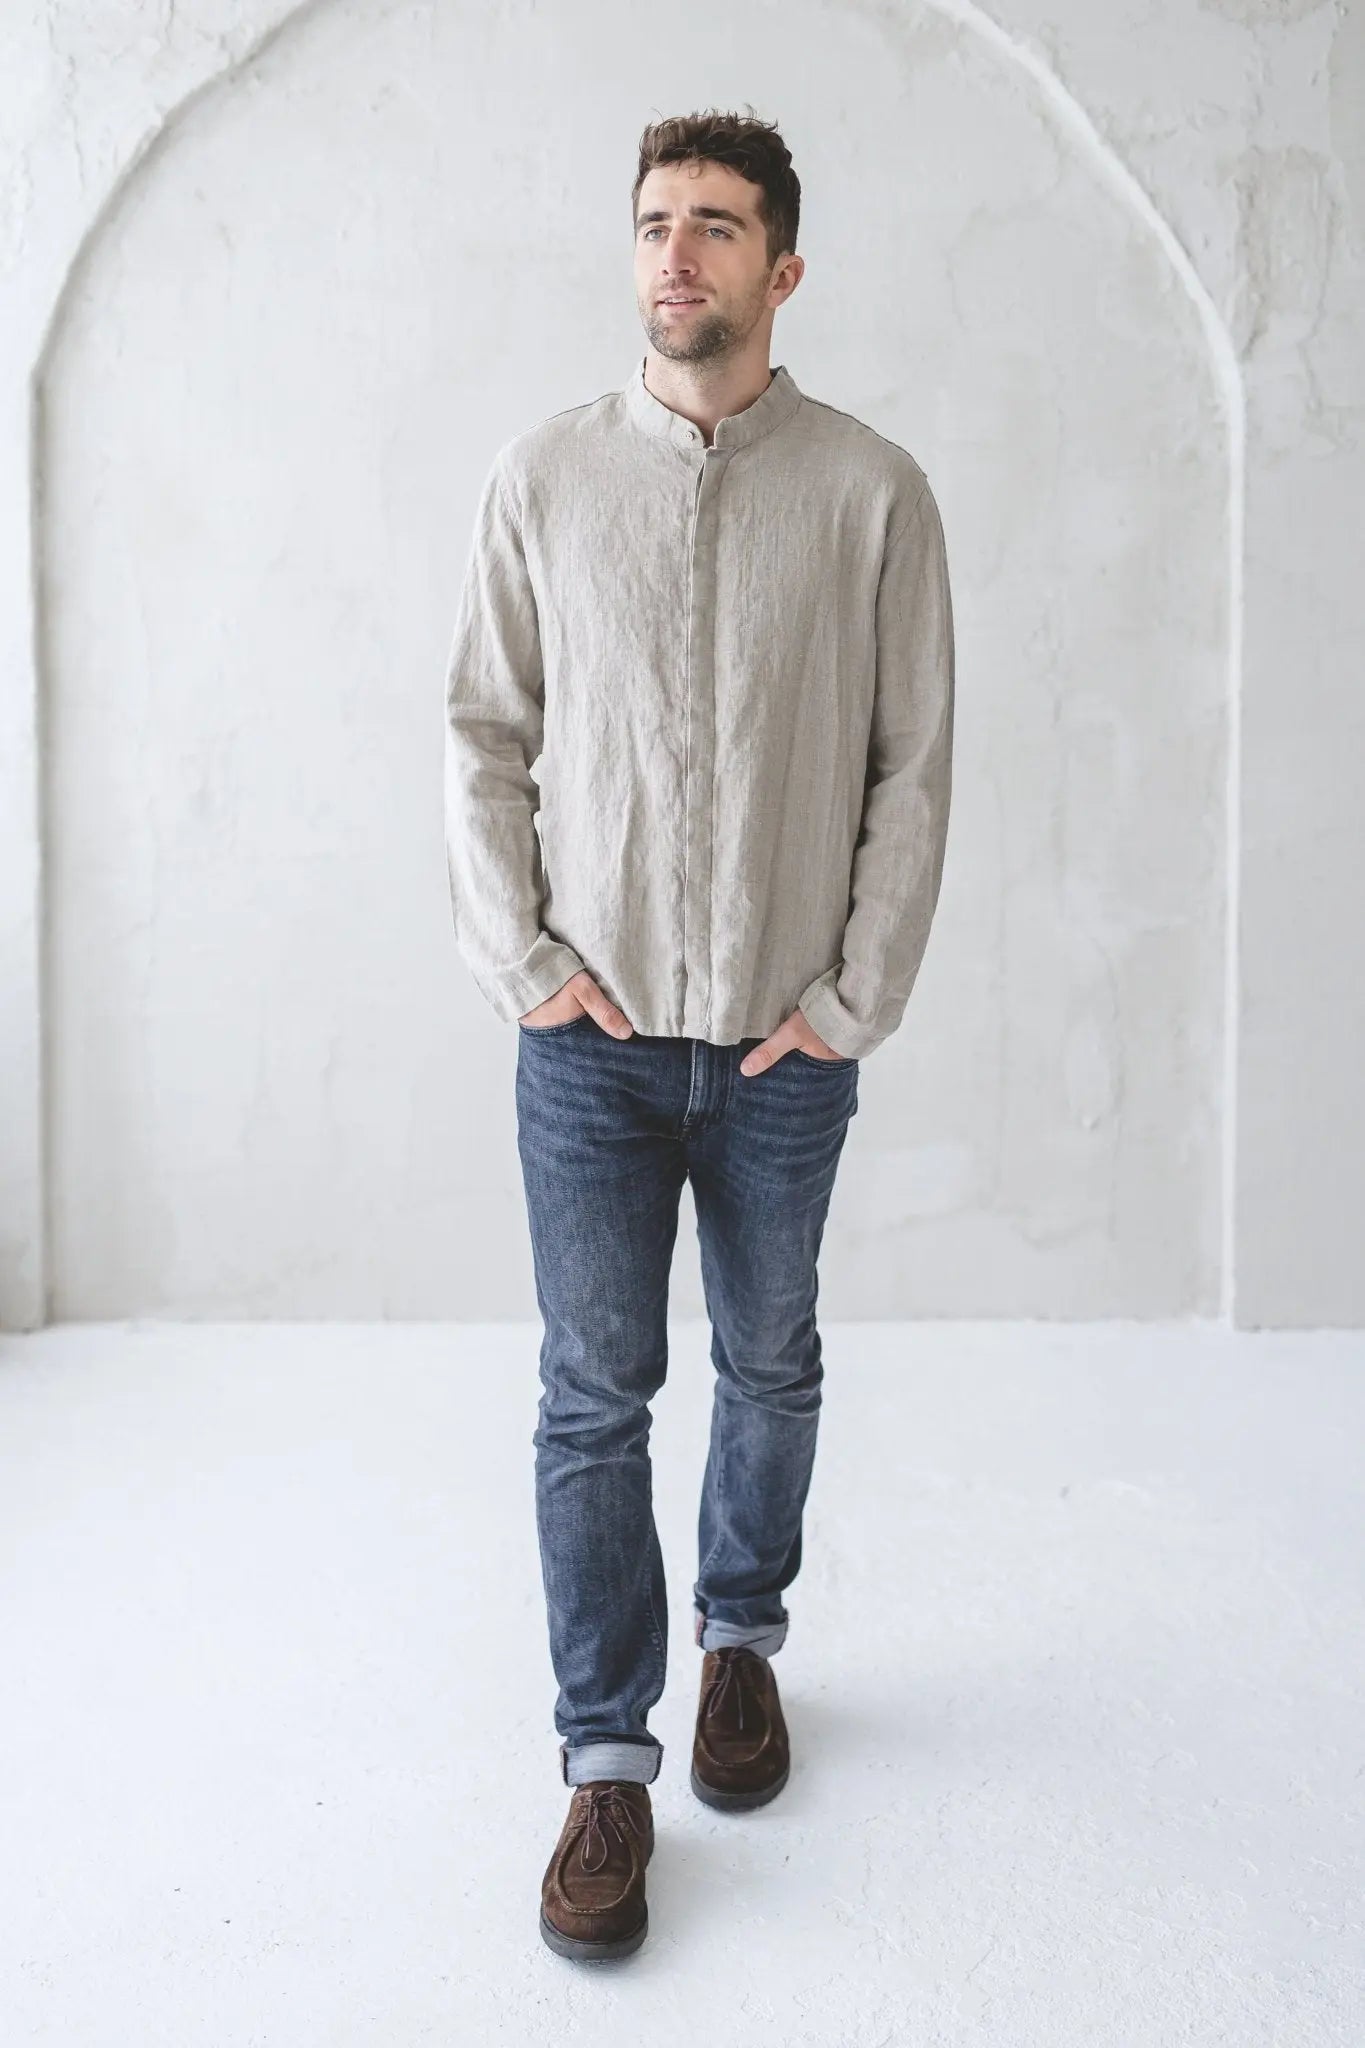 Men's Linen Shirt With Hidden Buttons - Epic Linen luxury linen